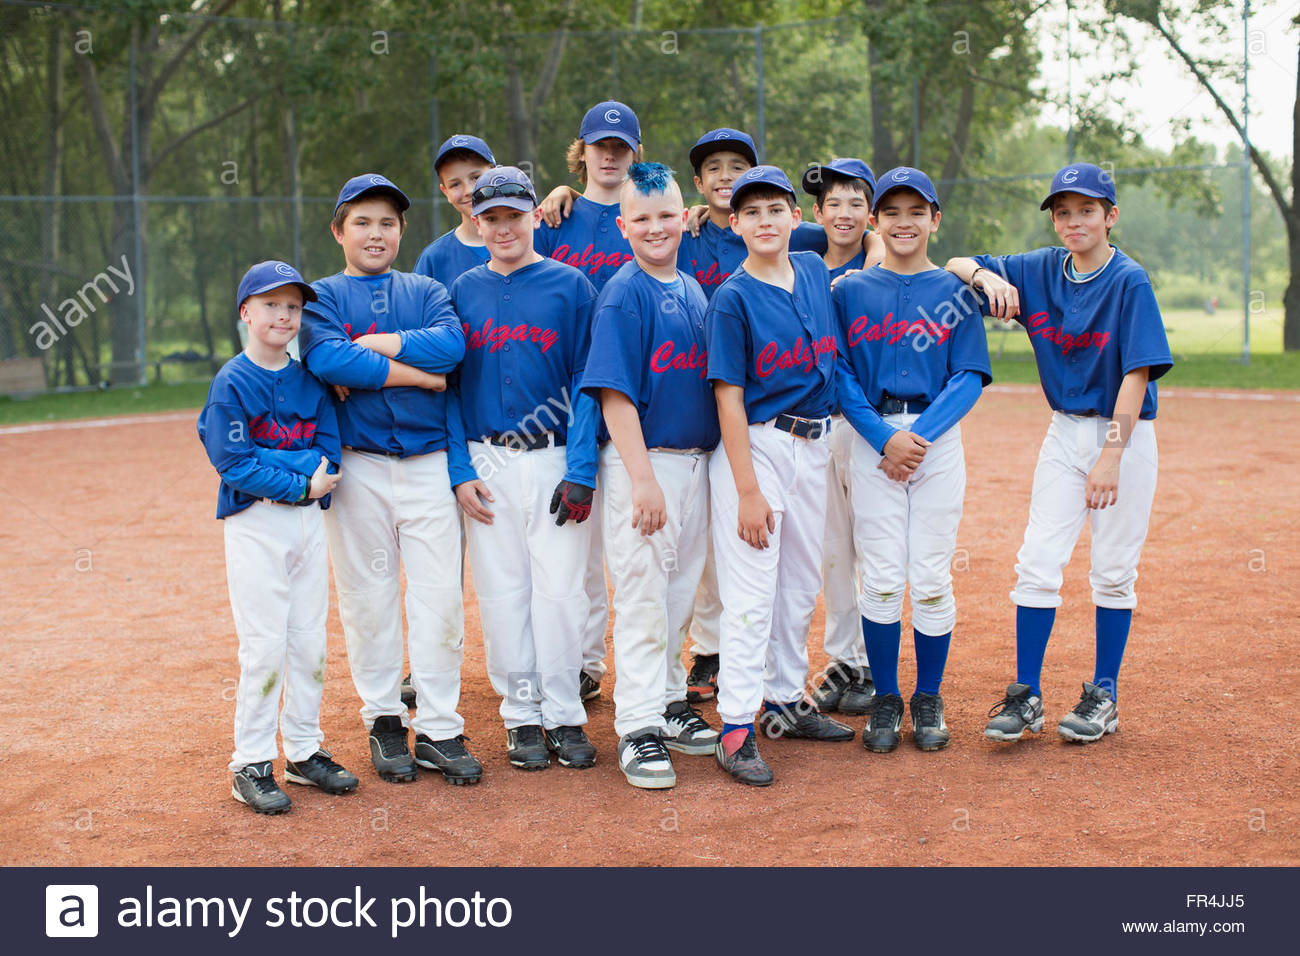 Foto de equipo del equipo de béisbol de los muchachos. Foto de stock